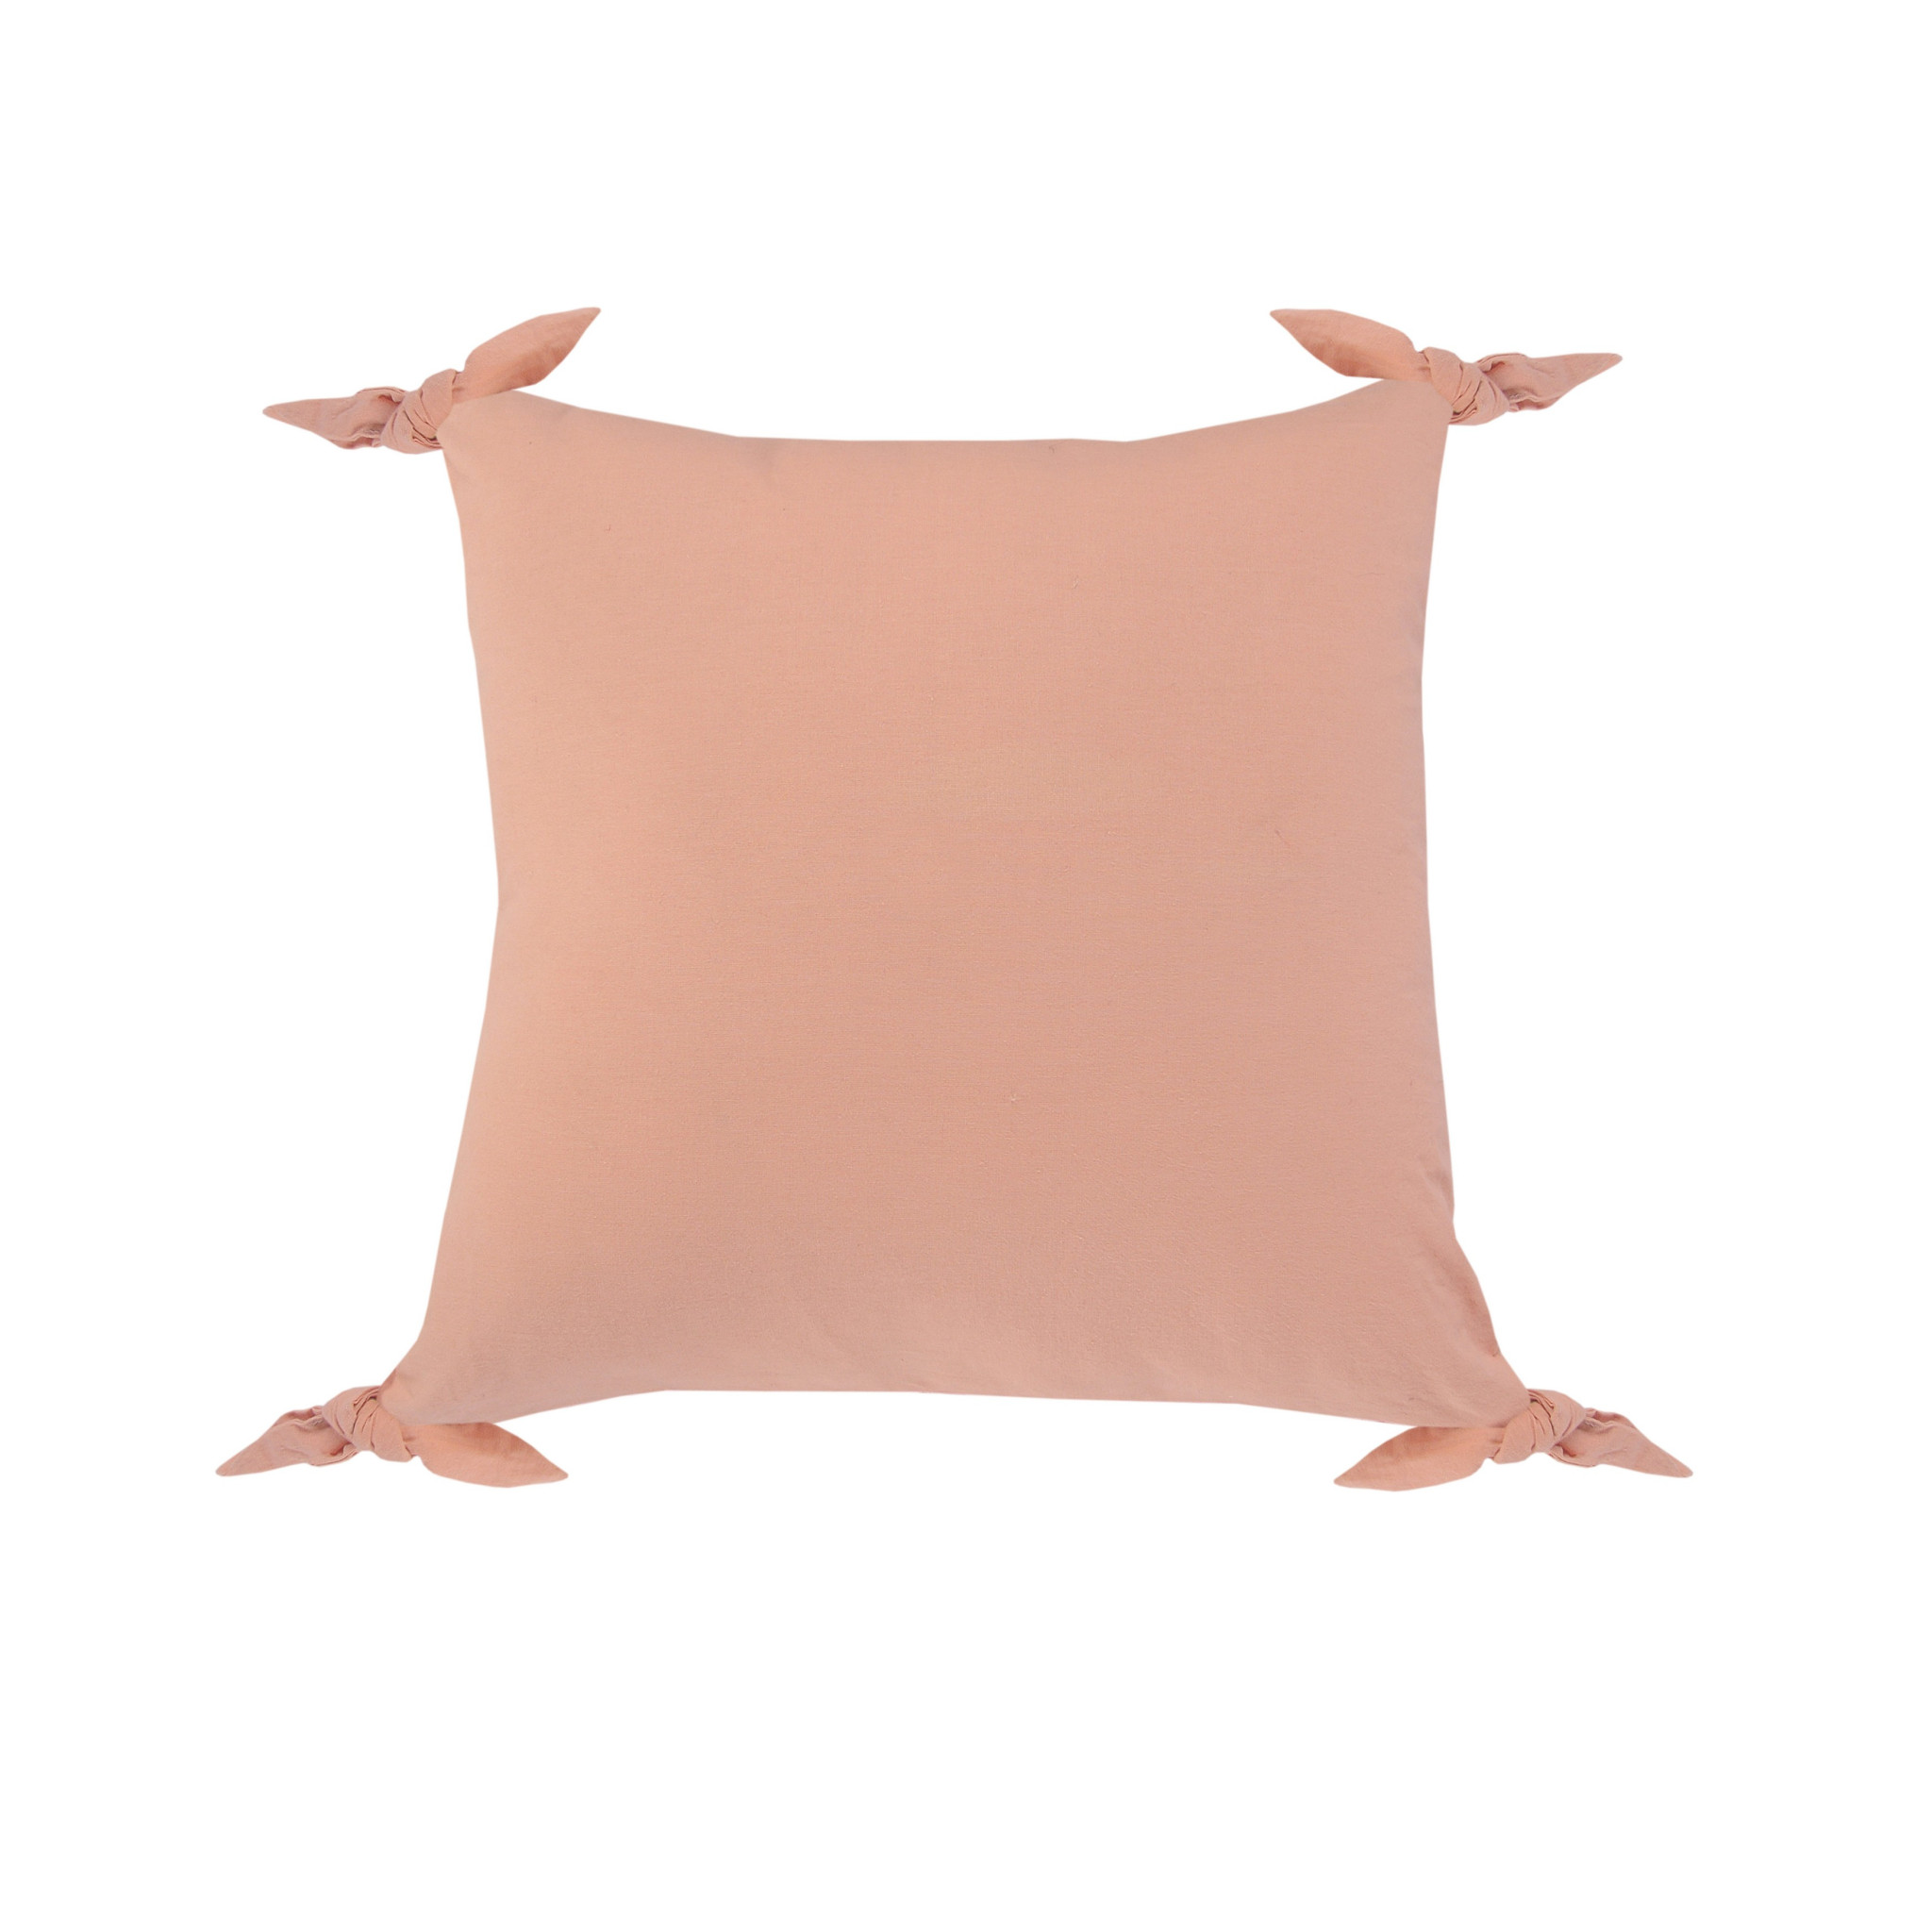 20" X 20" Blush Pink 100% Cotton Zippered Pillow-516637-1